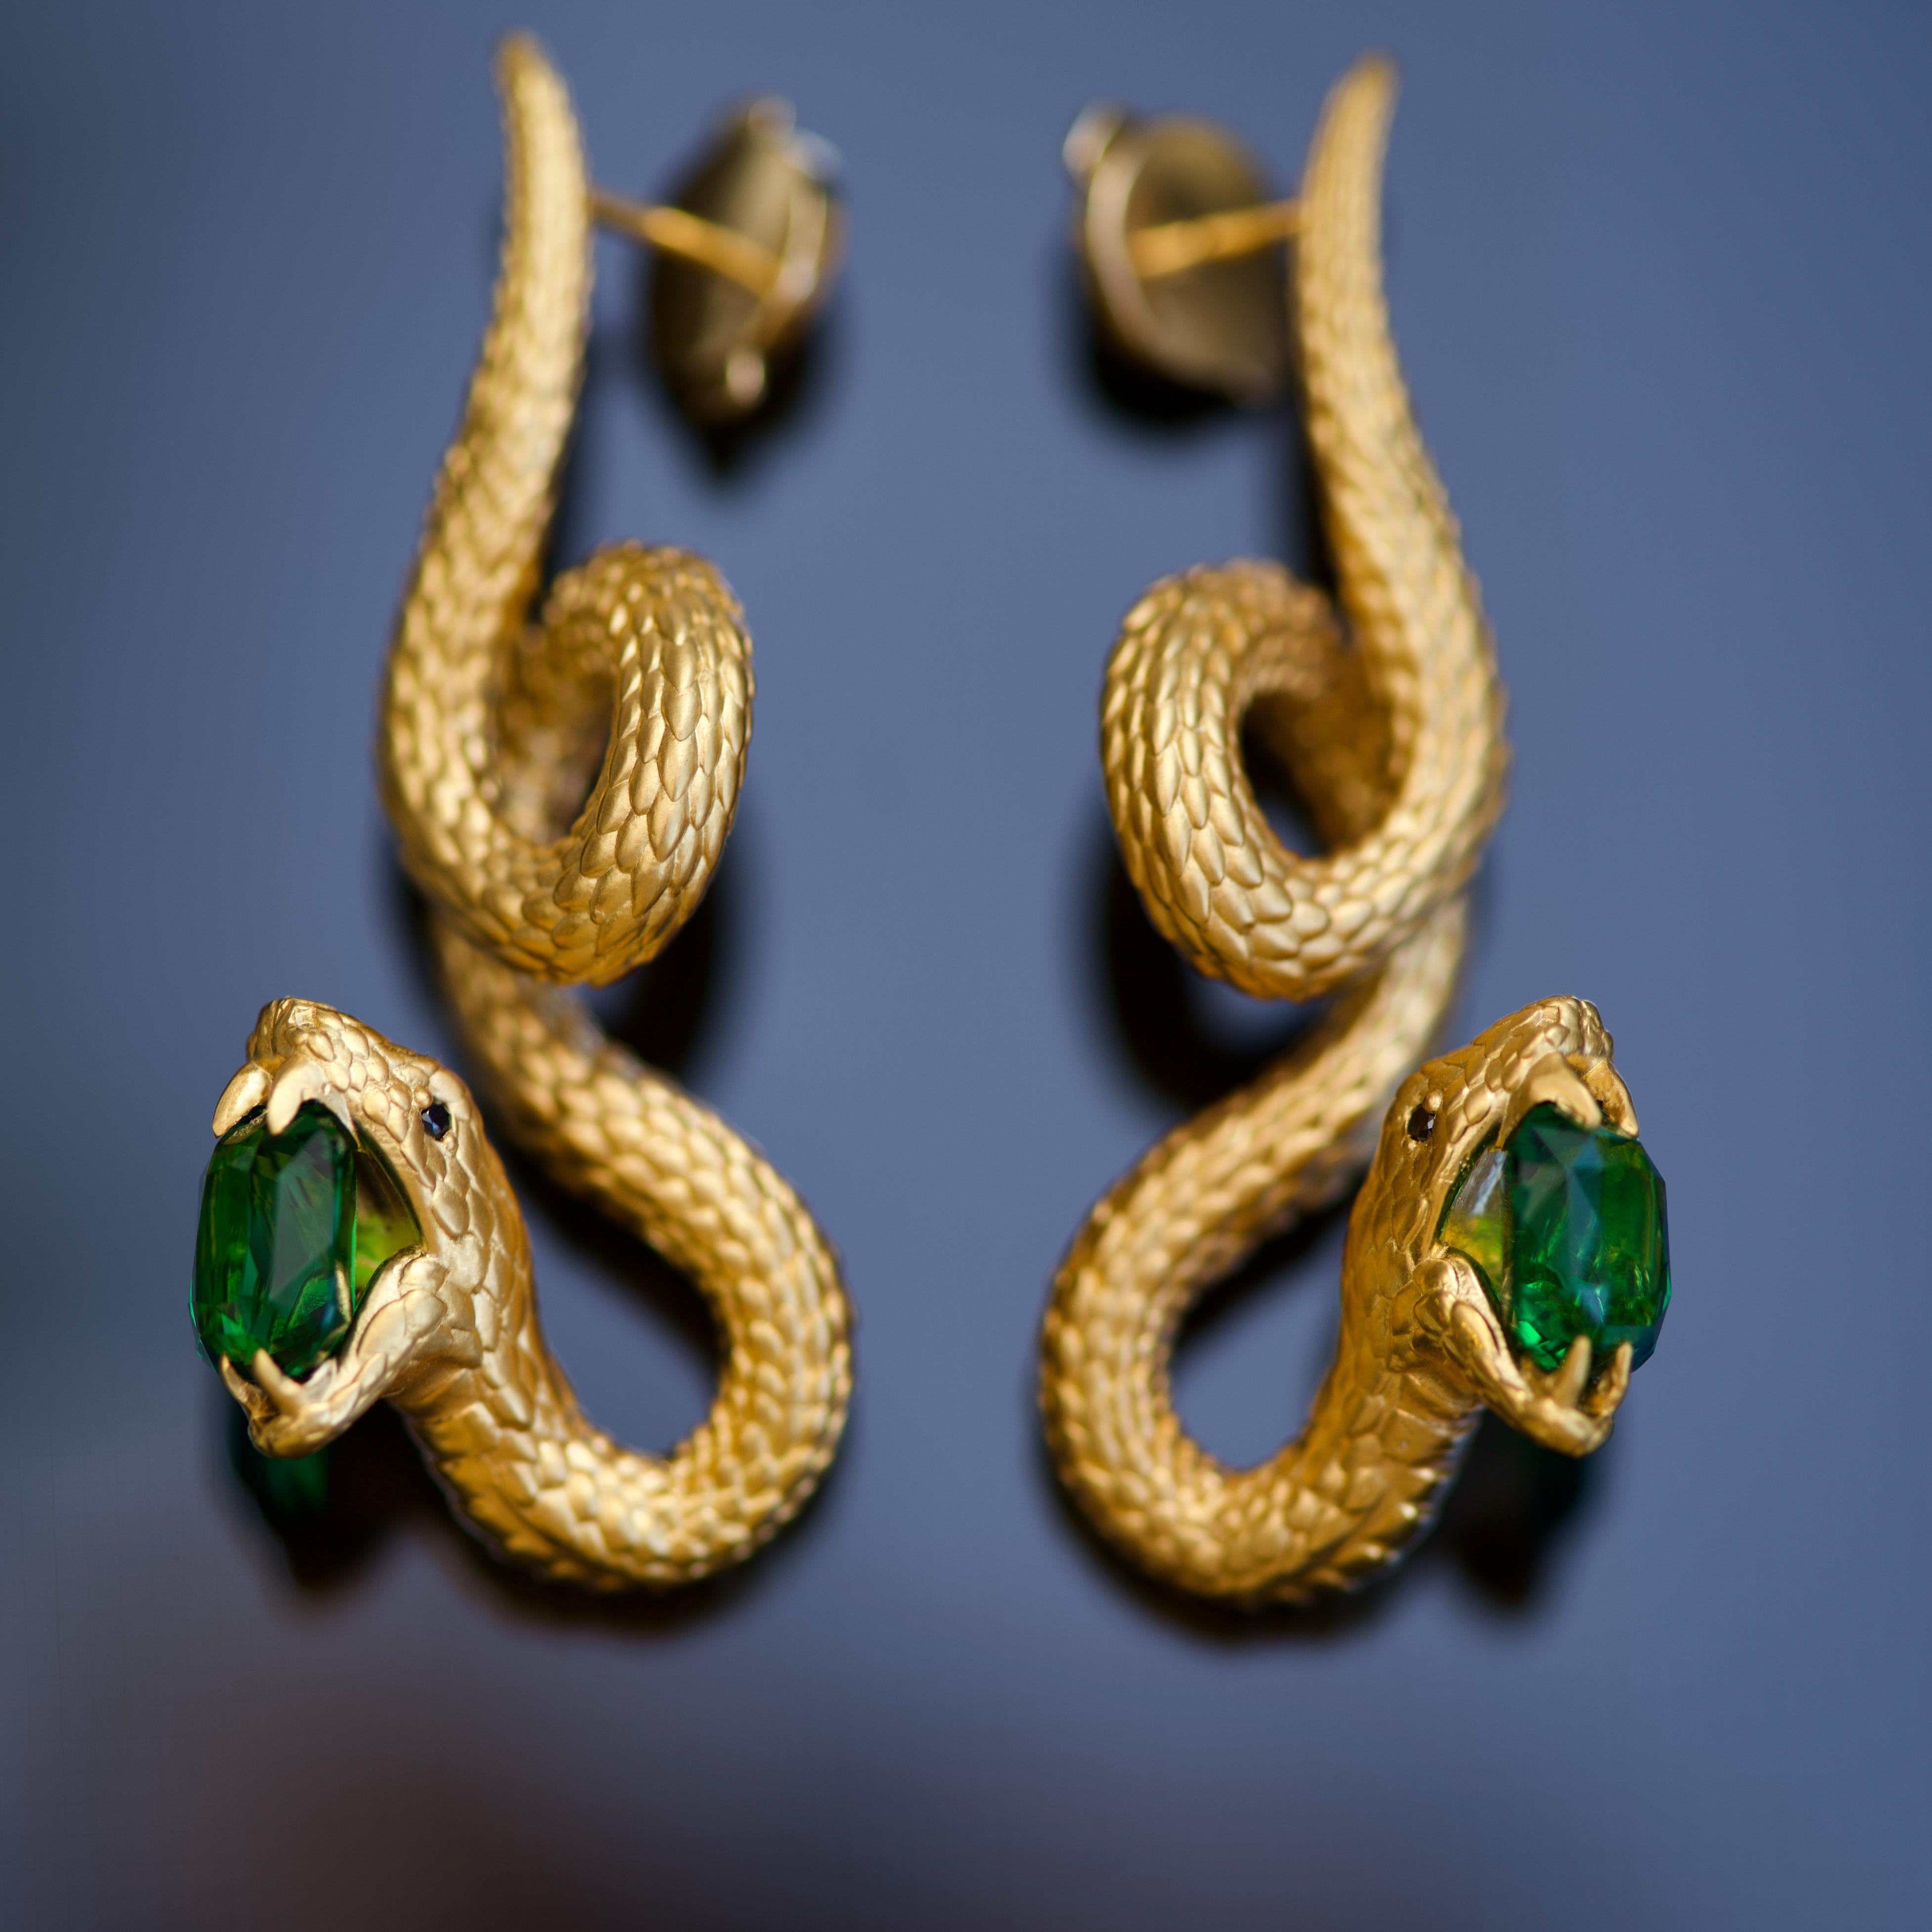 4, 03 Carat Green Vivid Tsavorite 18 Karat Yellow Golden Serpent Earrings by D&A 1